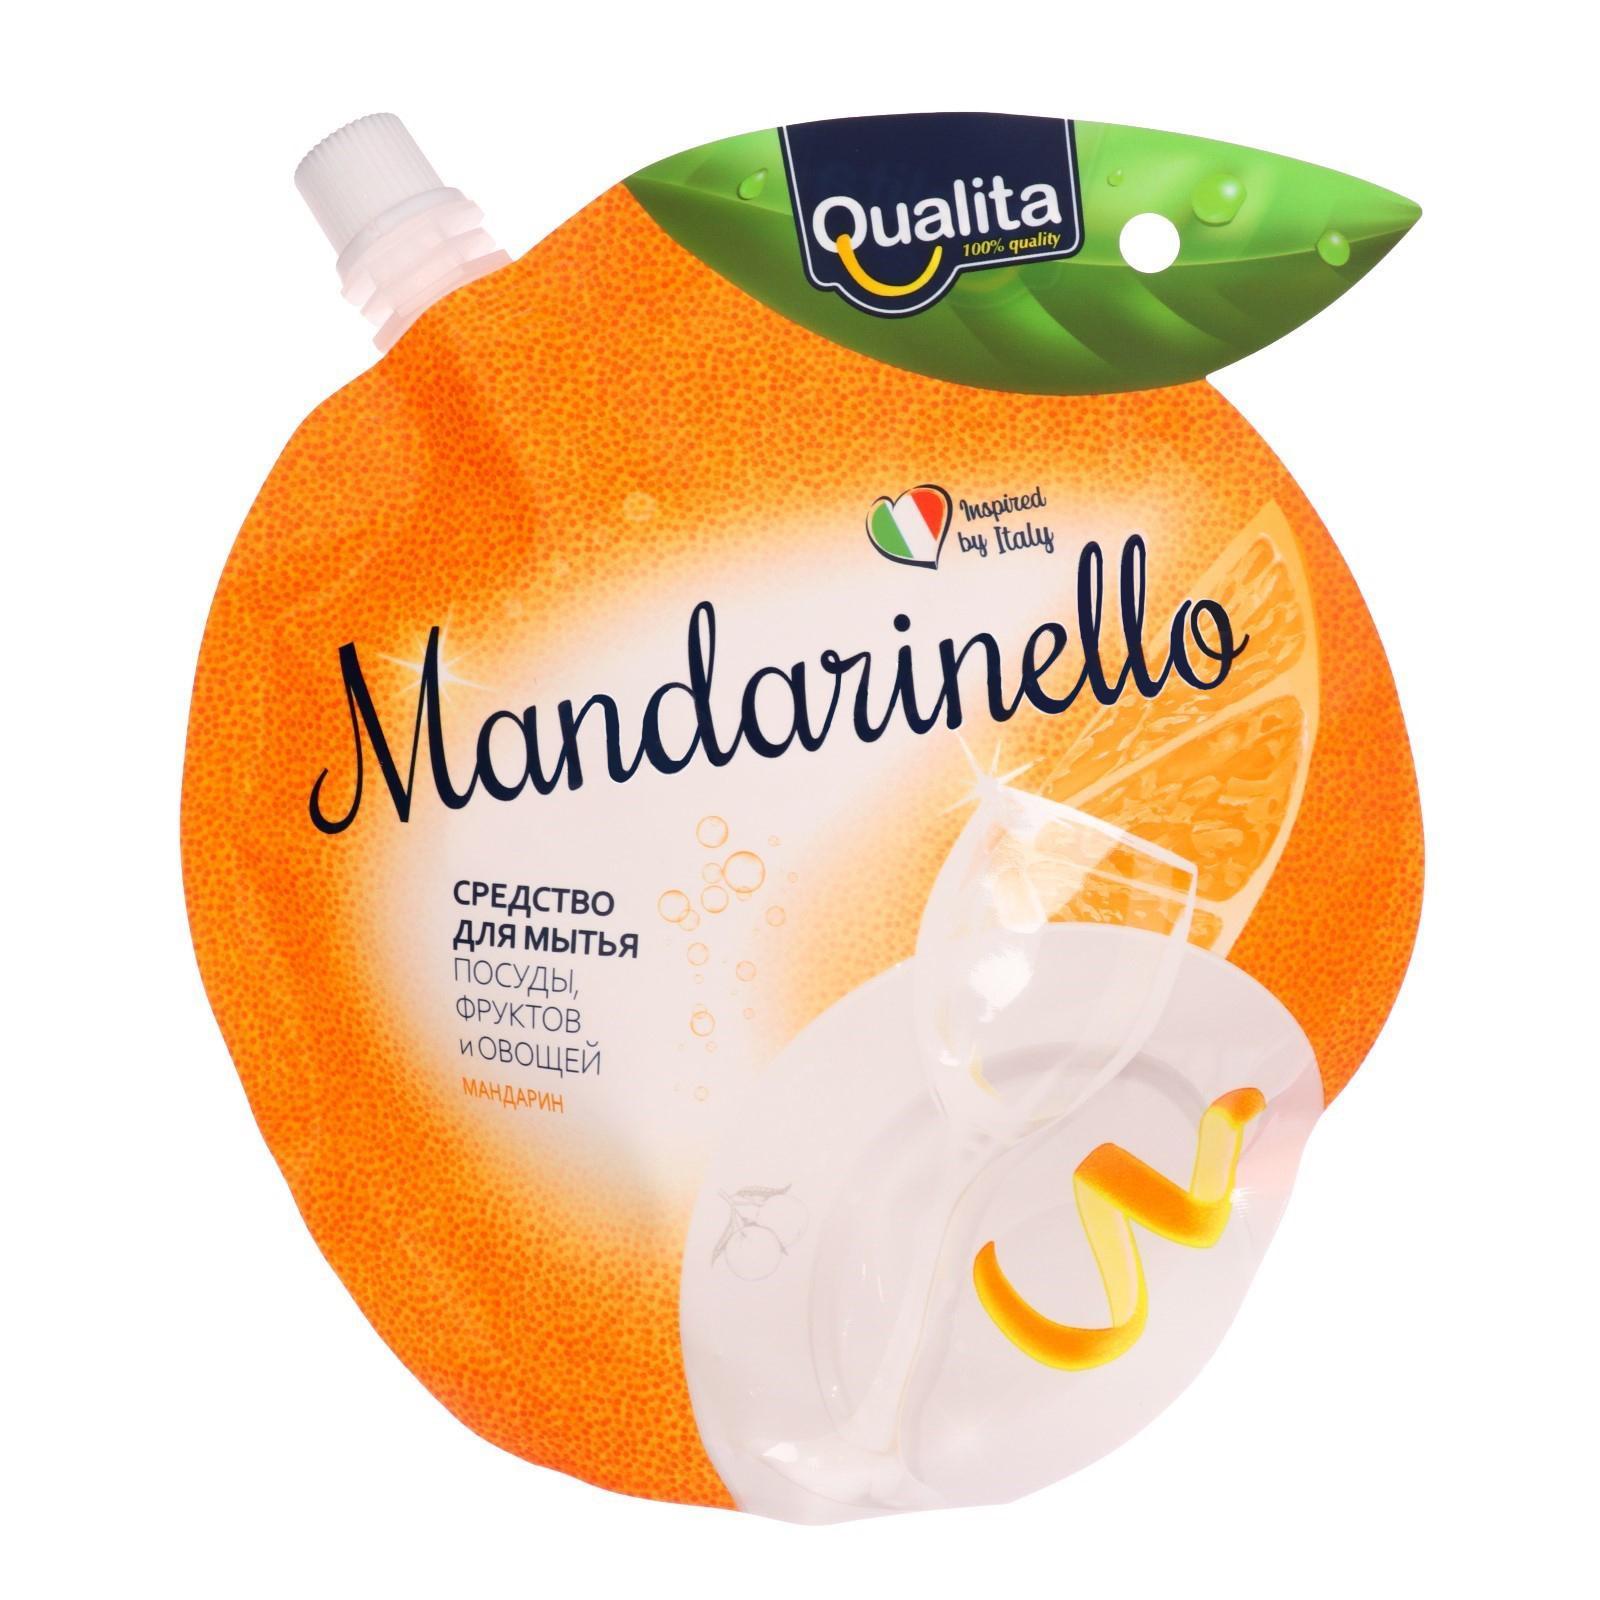 фото Средство qualita mandarinello для мытья посуды 450 мл